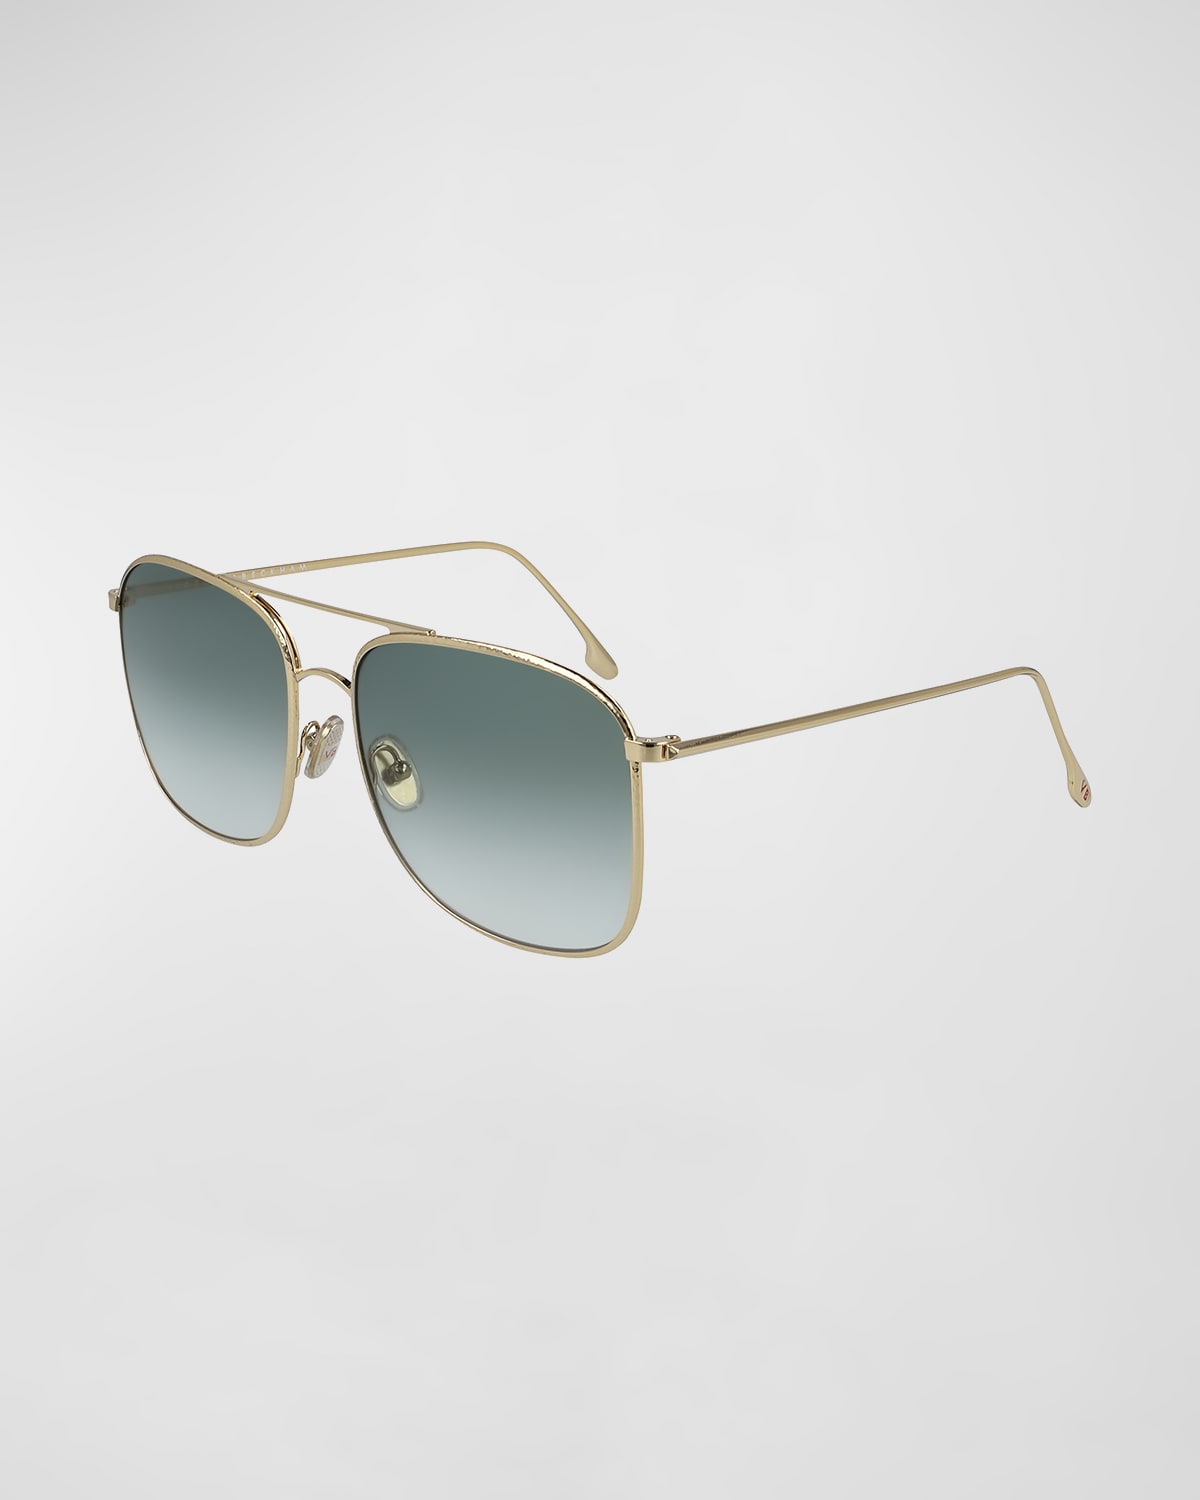 Victoria Beckham Square Hammered Metal Navigator Sunglasses In Gold / Sage